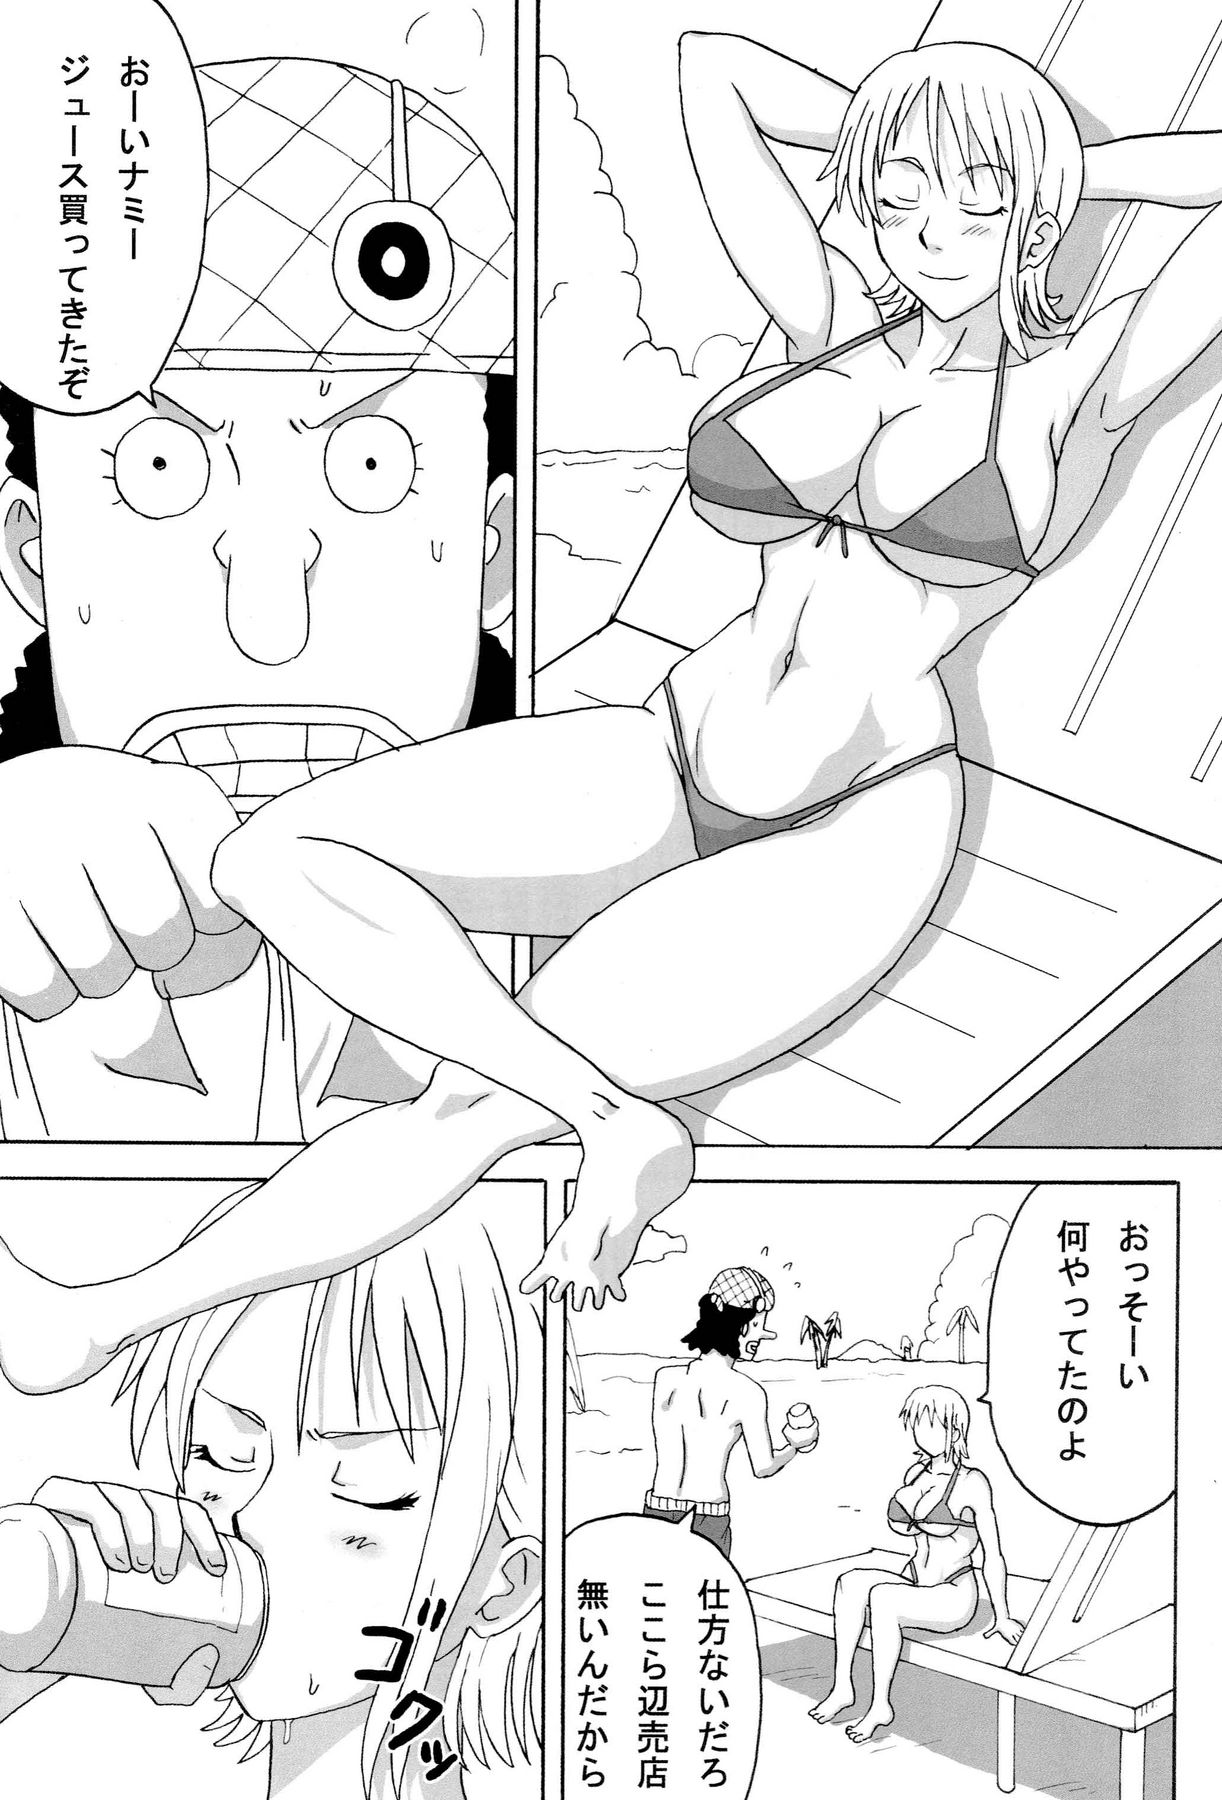 Read SC39 Naruho Dou Naruhodo Ii Nami Yume Kibun One Piece